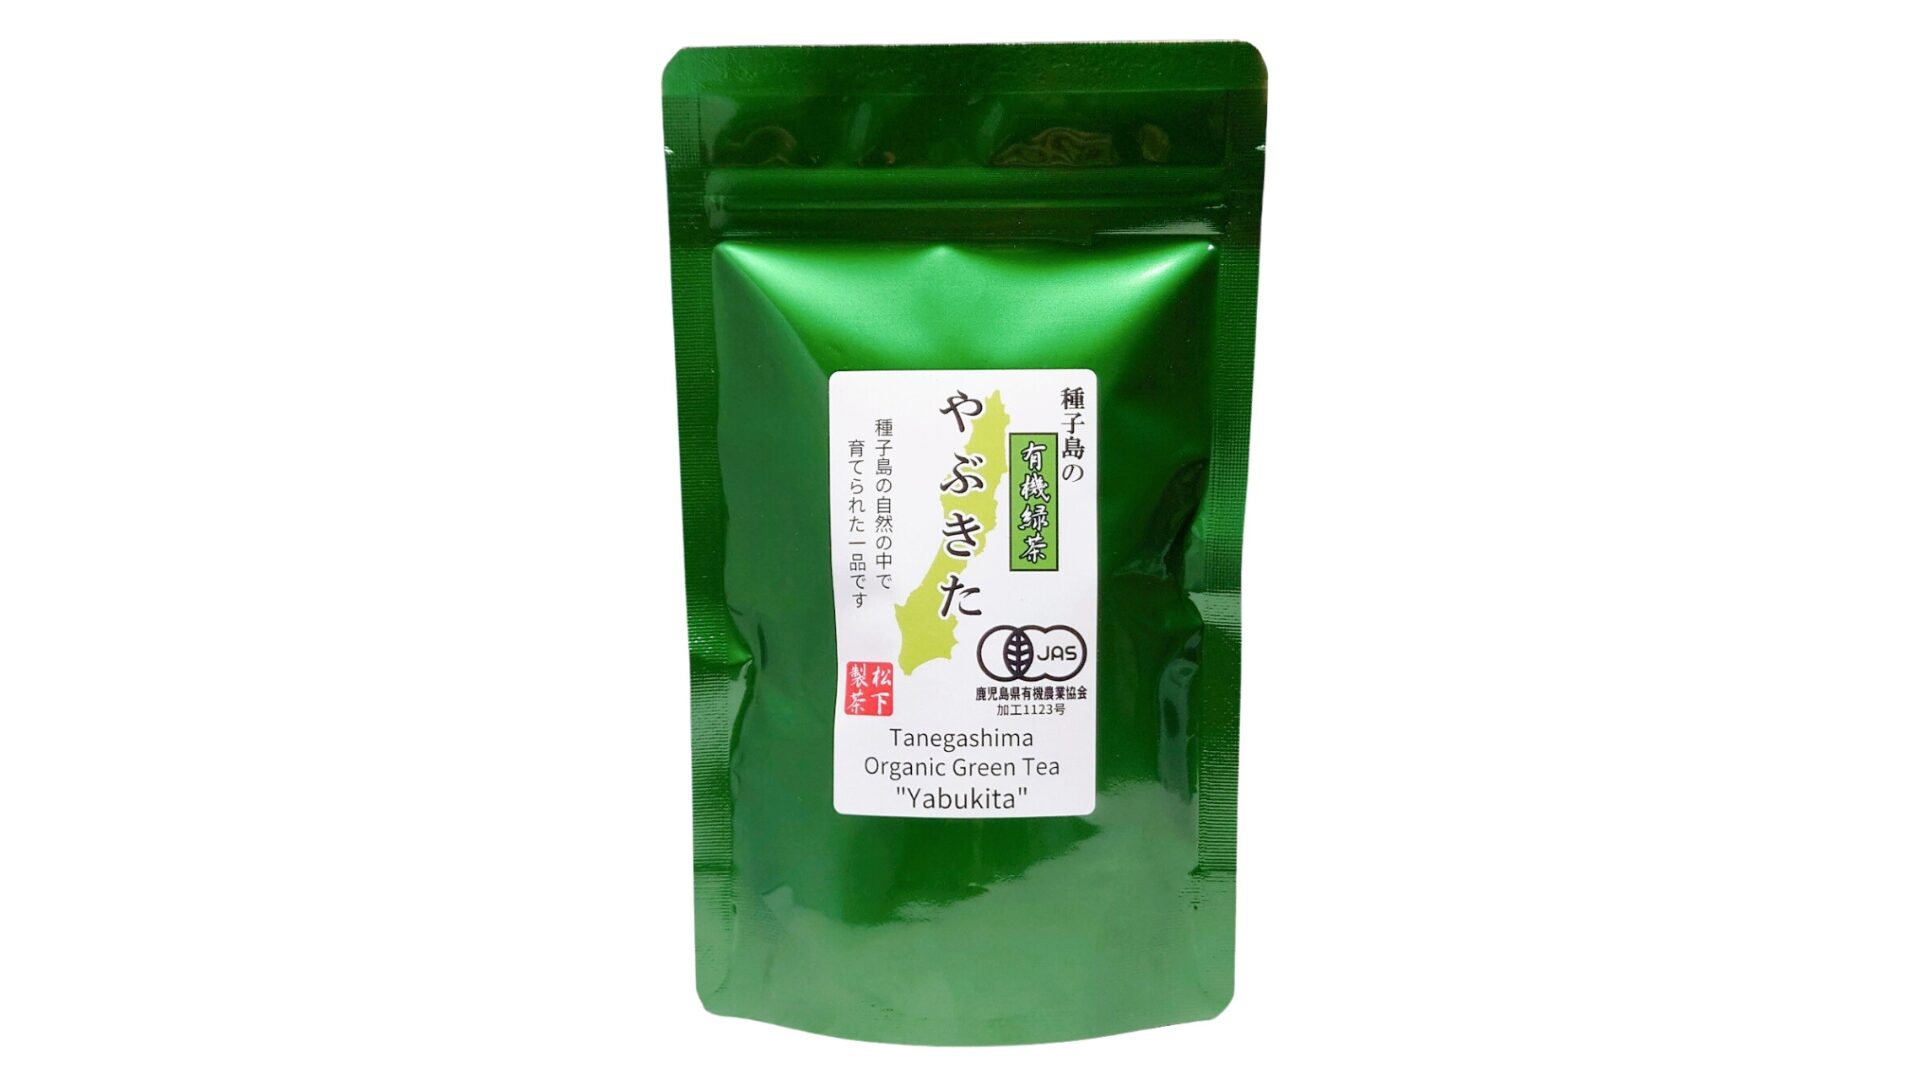 松下製茶 種子島の有機緑茶『やぶきた』 茶葉(リーフ) 100g